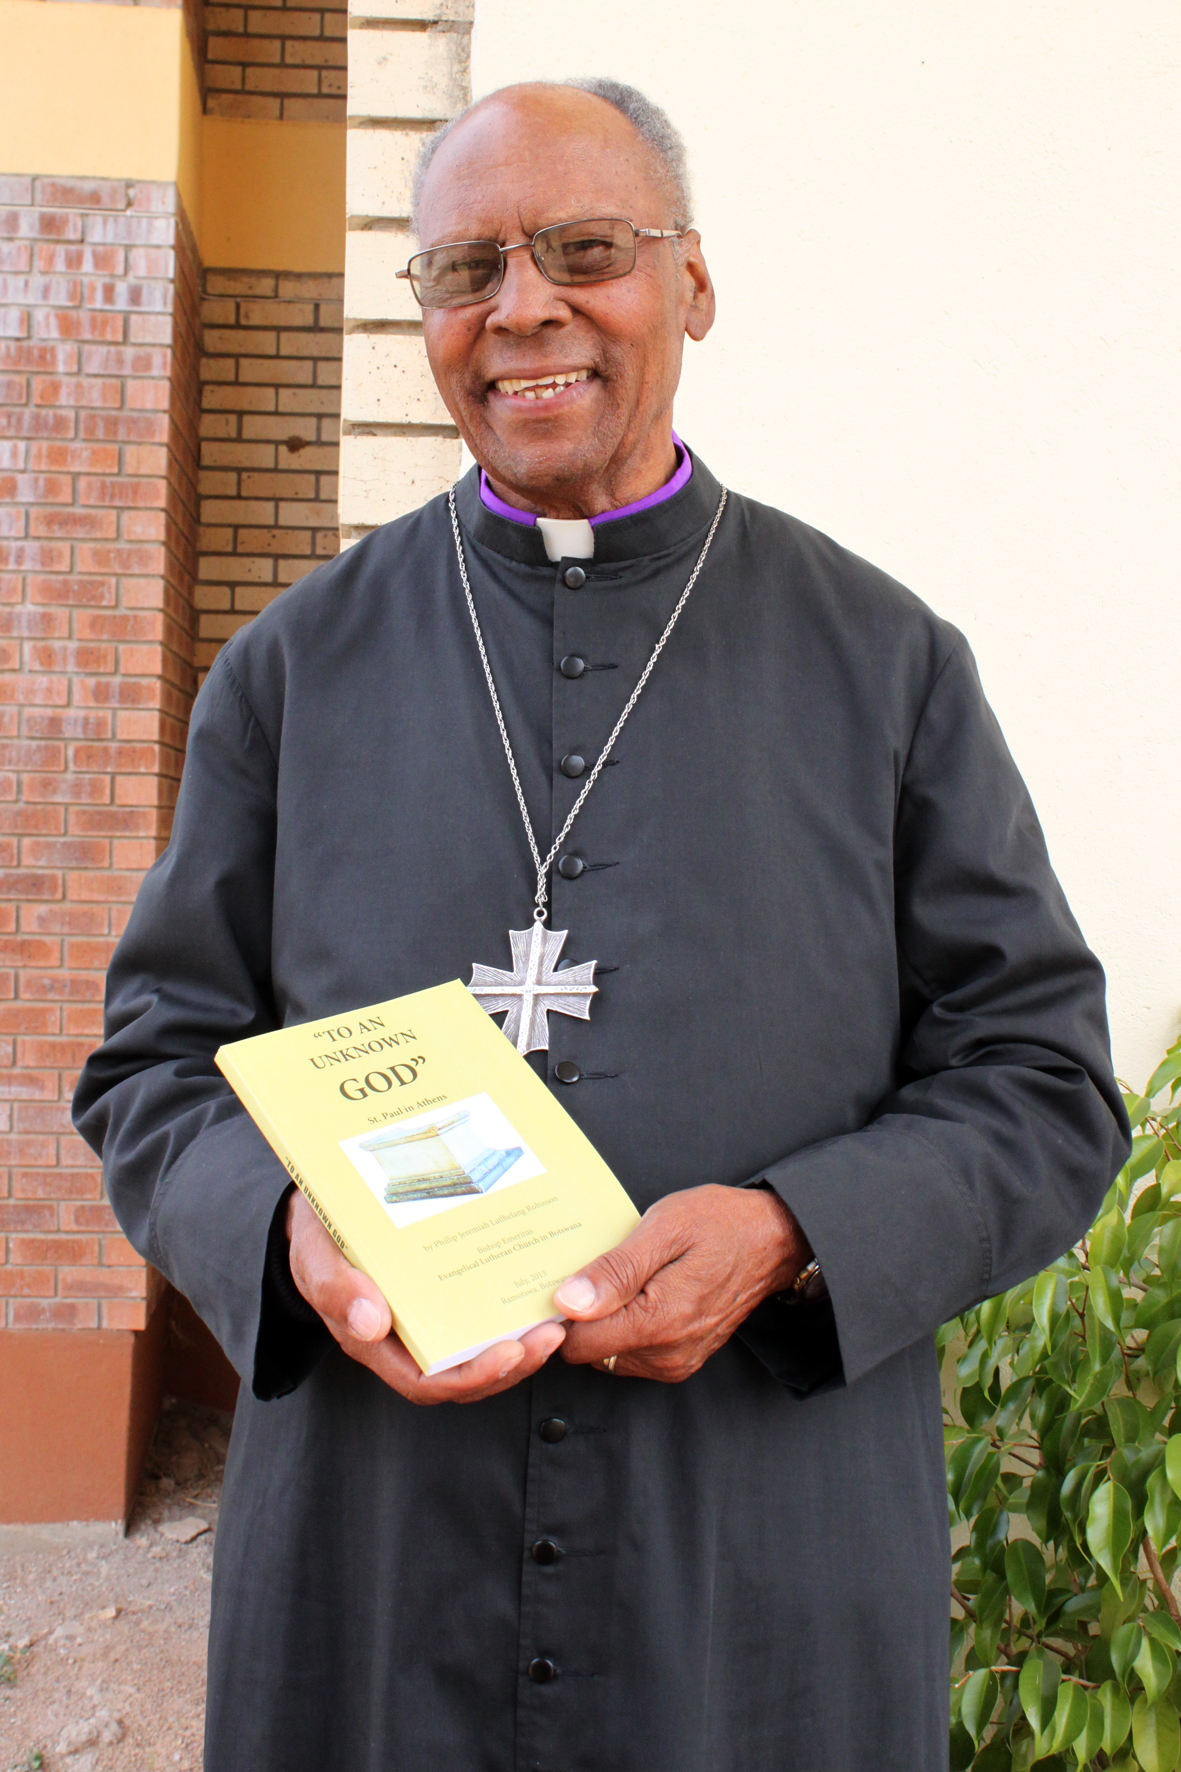 Piispa Phillip Robinsonin kirja on tarkoitettu henkilökohtaiseen käyttöön